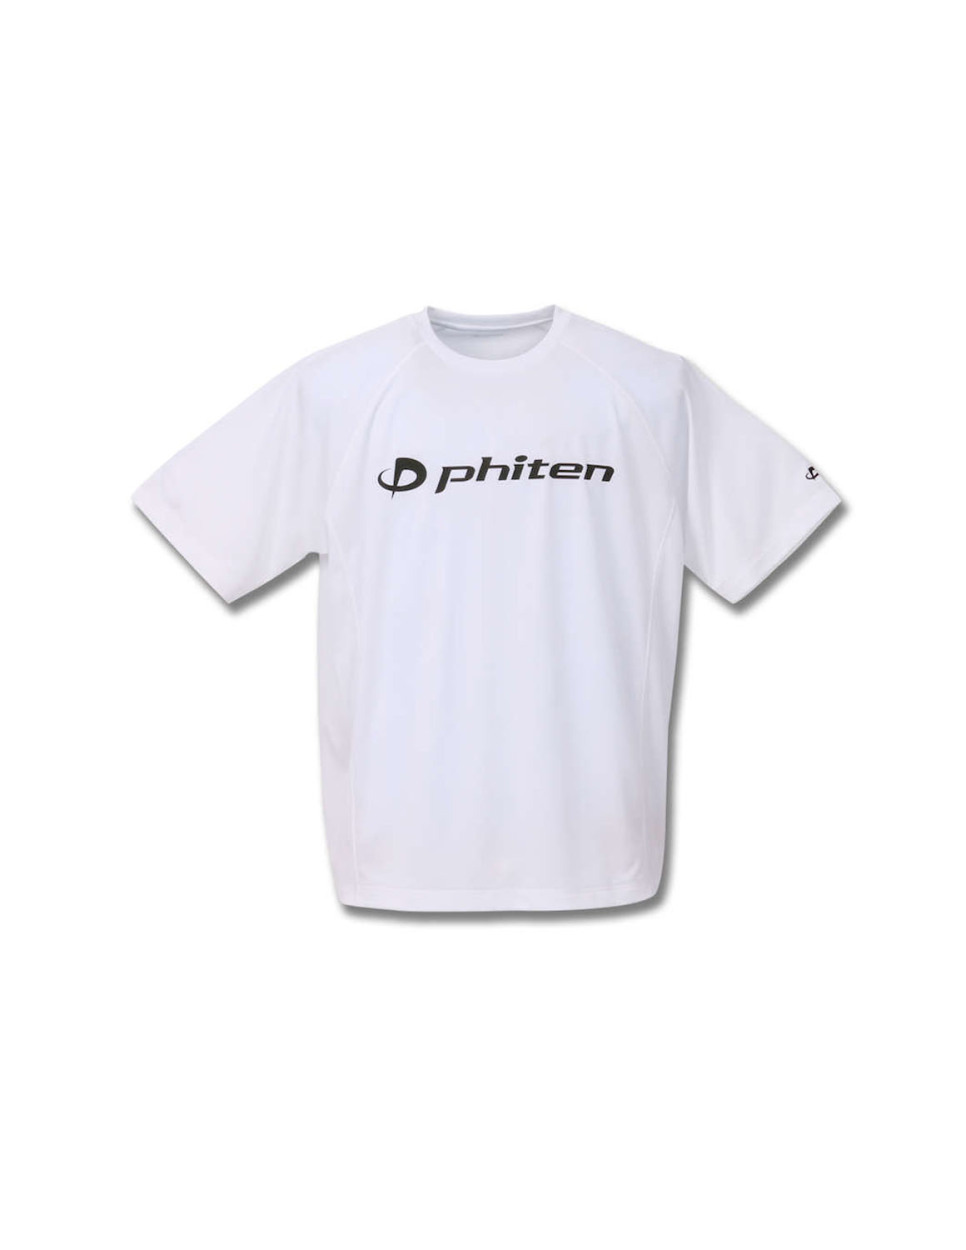 うのにもお得な Phiten tシャツ 白 ienomat.com.br